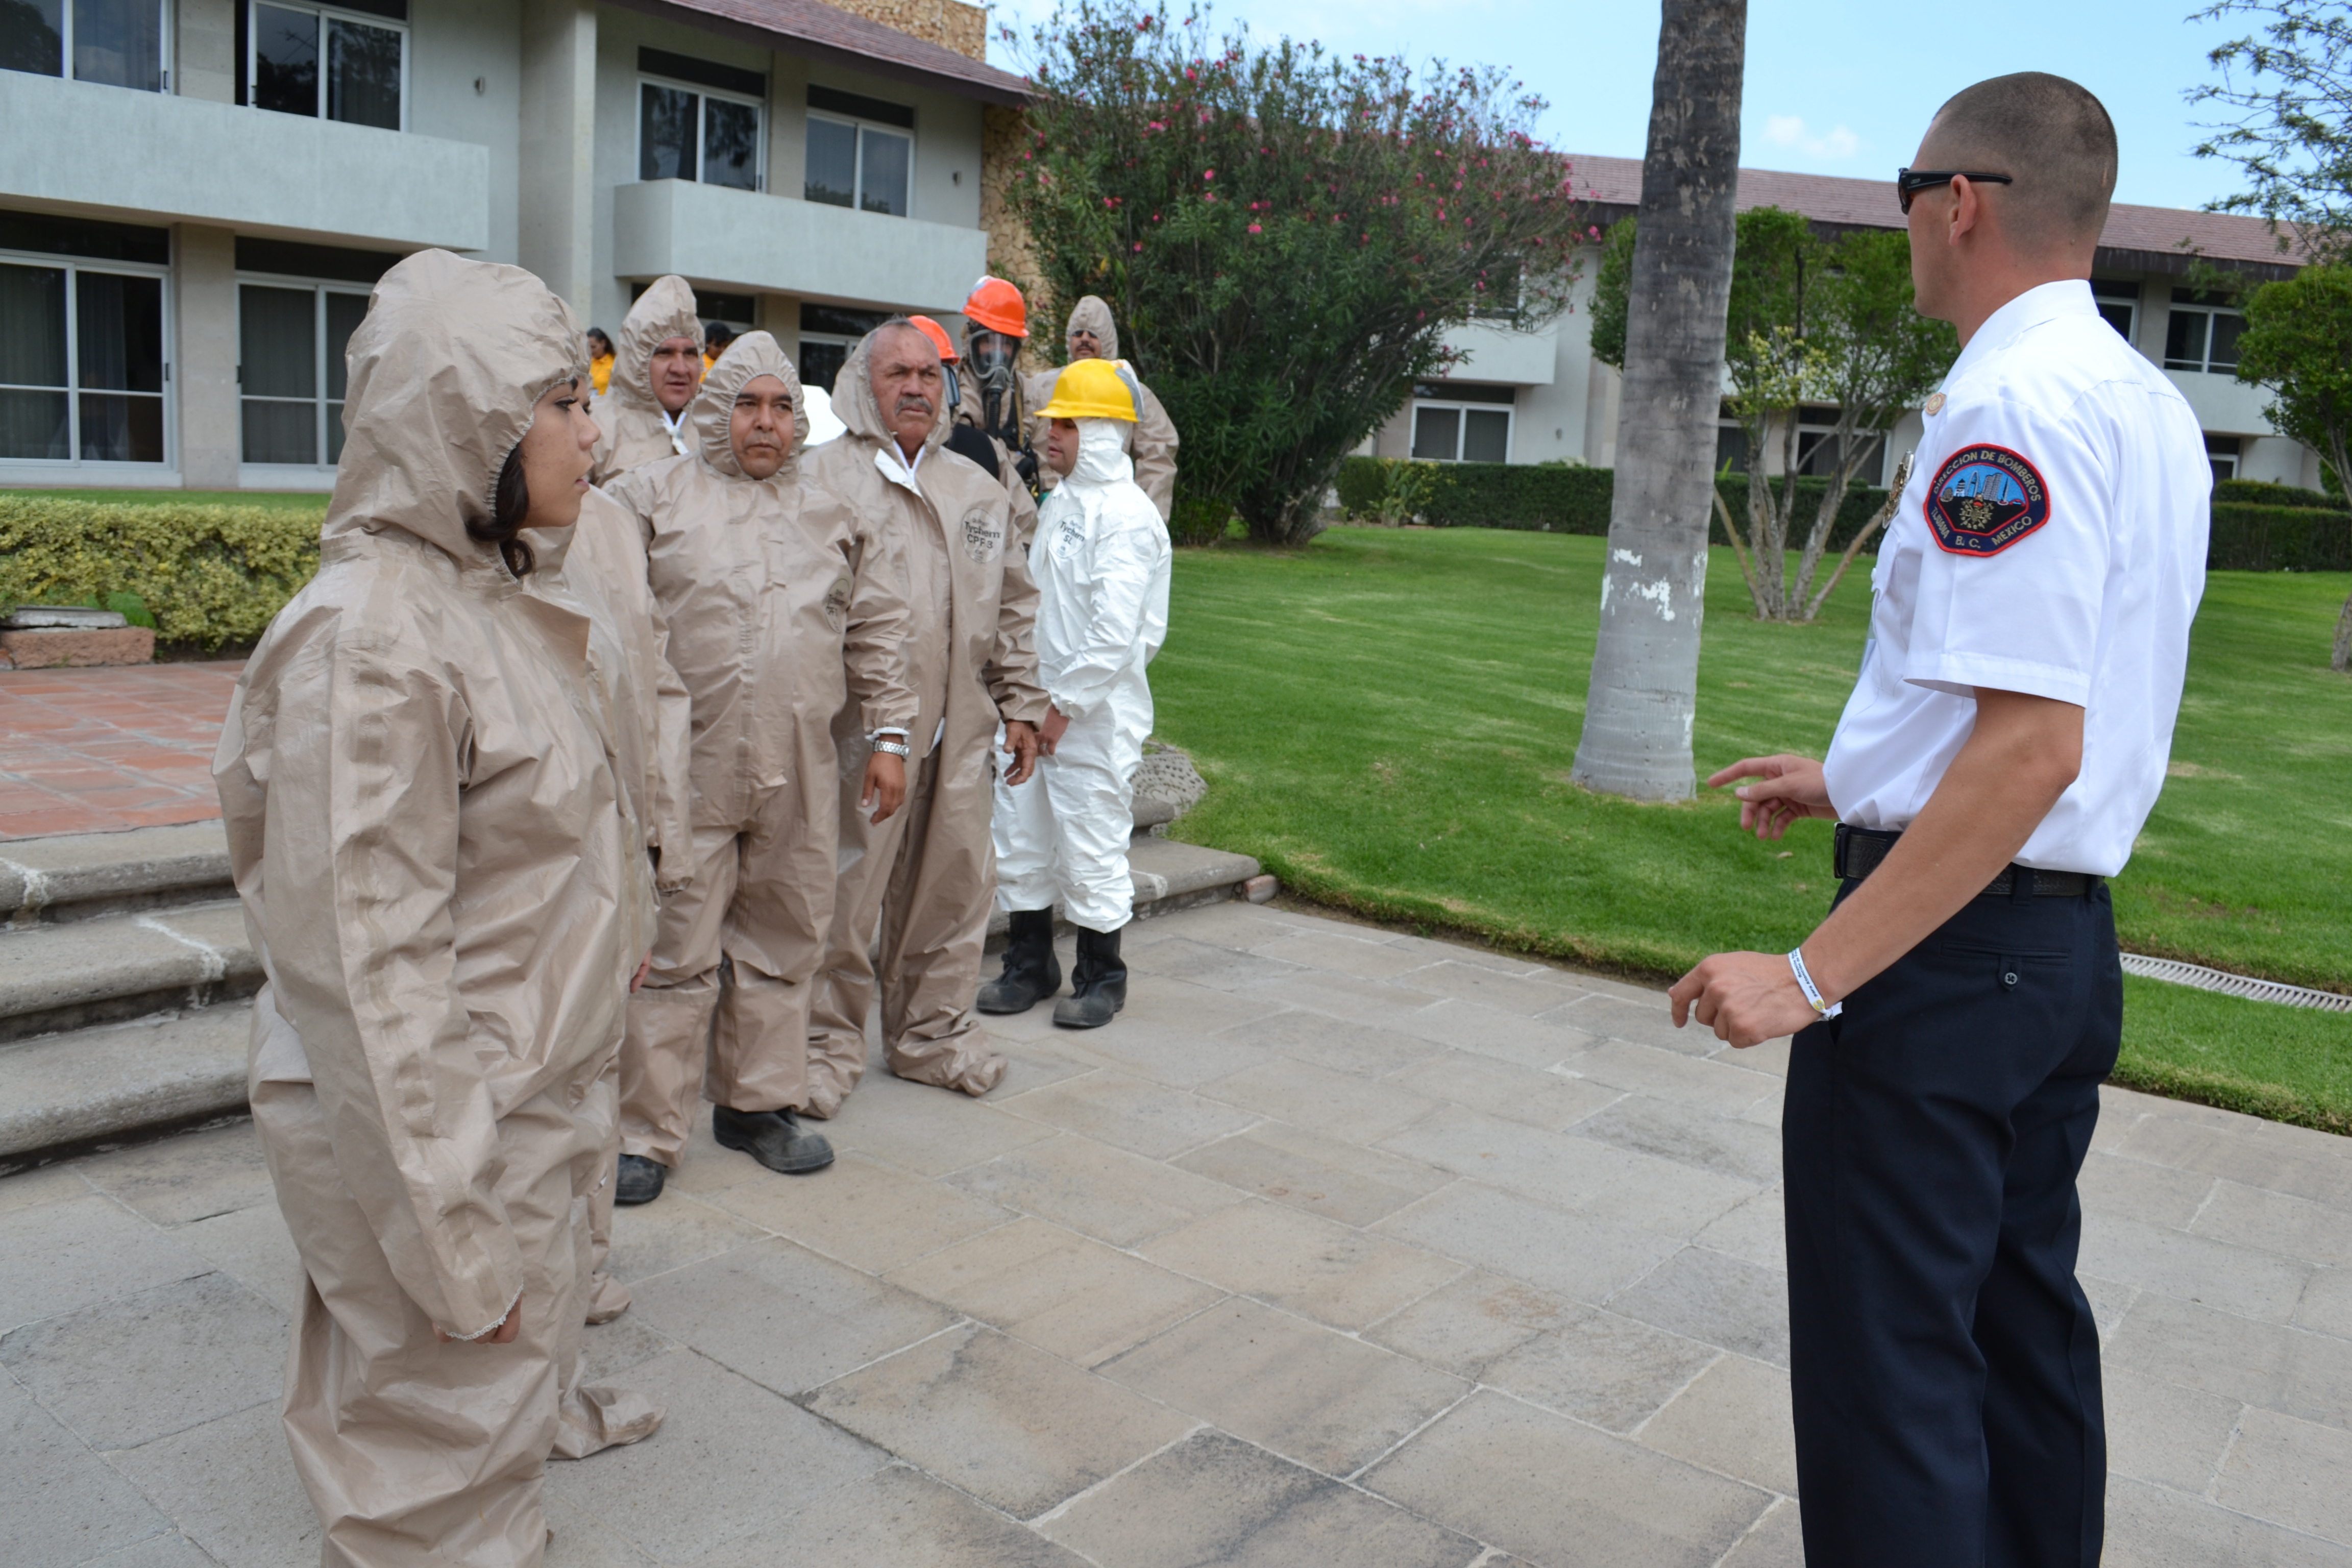 Personal de protección civil se encuentra en formación con uniformes de manejos de sustancias químicas, como parte de la capacitación que reciben de Bomberos de Tijuana y la Unidad Estatal de Protección Civil de Baja California